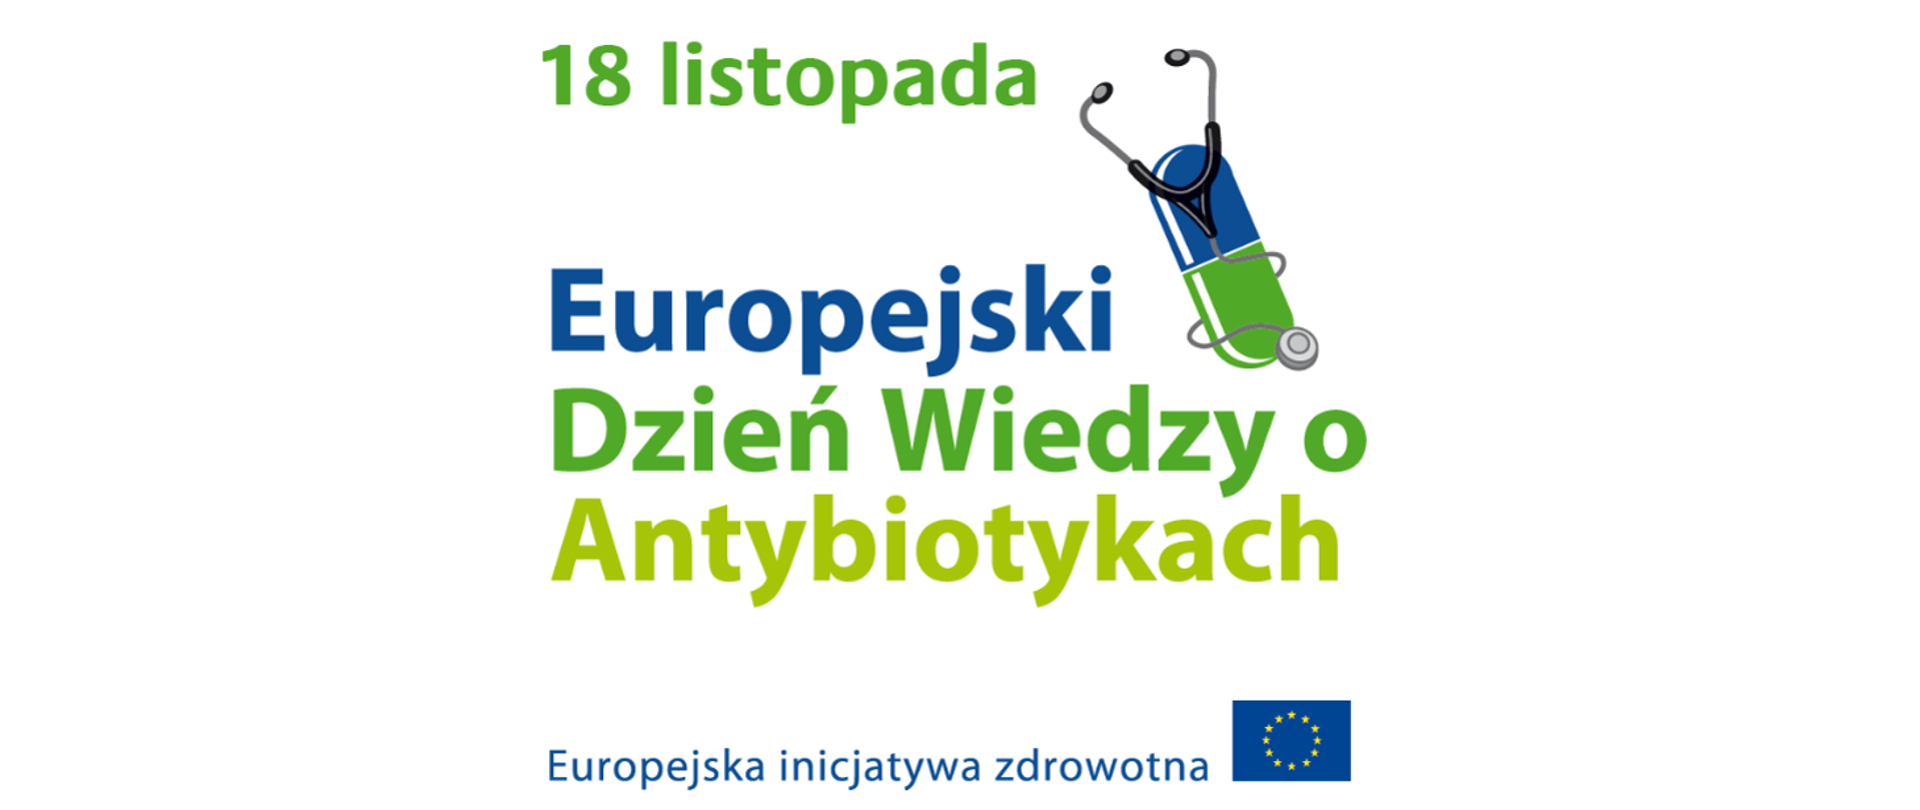 Napis: 18 listopada Europejski Dzień Wiedzy o Antybiotykach. Europejska inicjatywa zdrowotna. Obok flaga Unii Europejskiej.